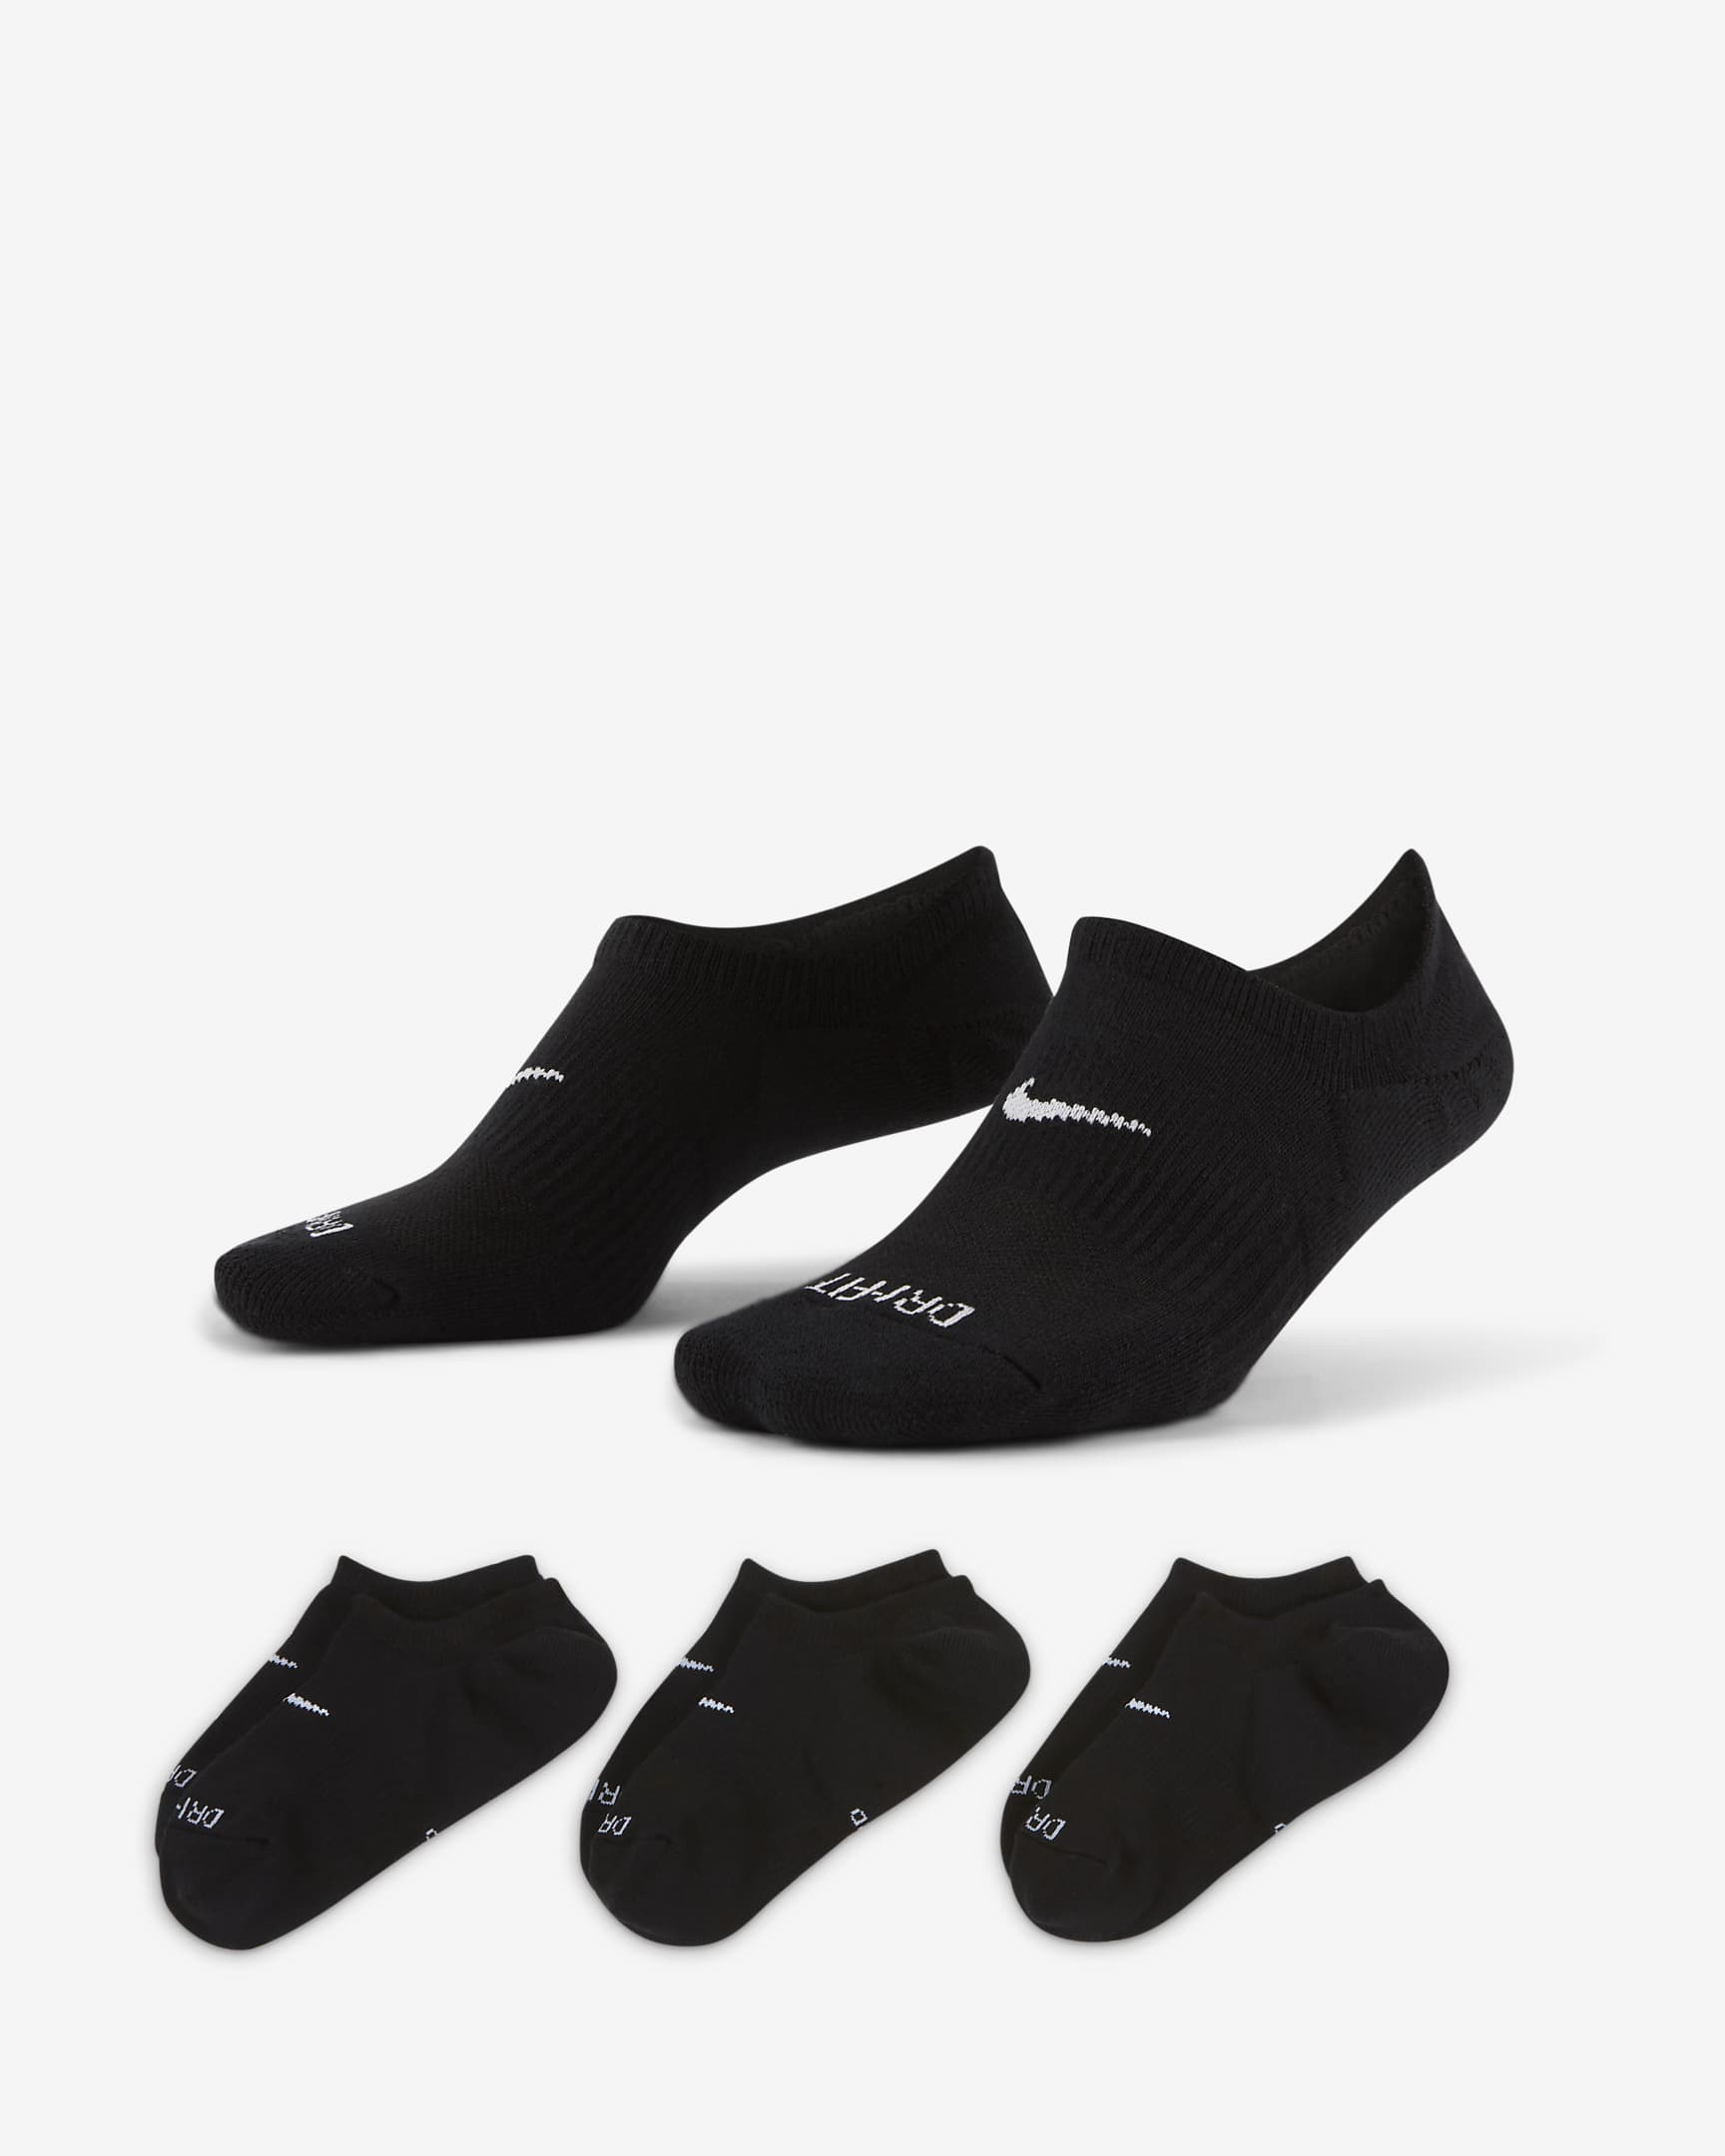 Socquettes ouvertes de training Nike Everyday Plus Cushioned pour Femme (3 paires) - Multicolore